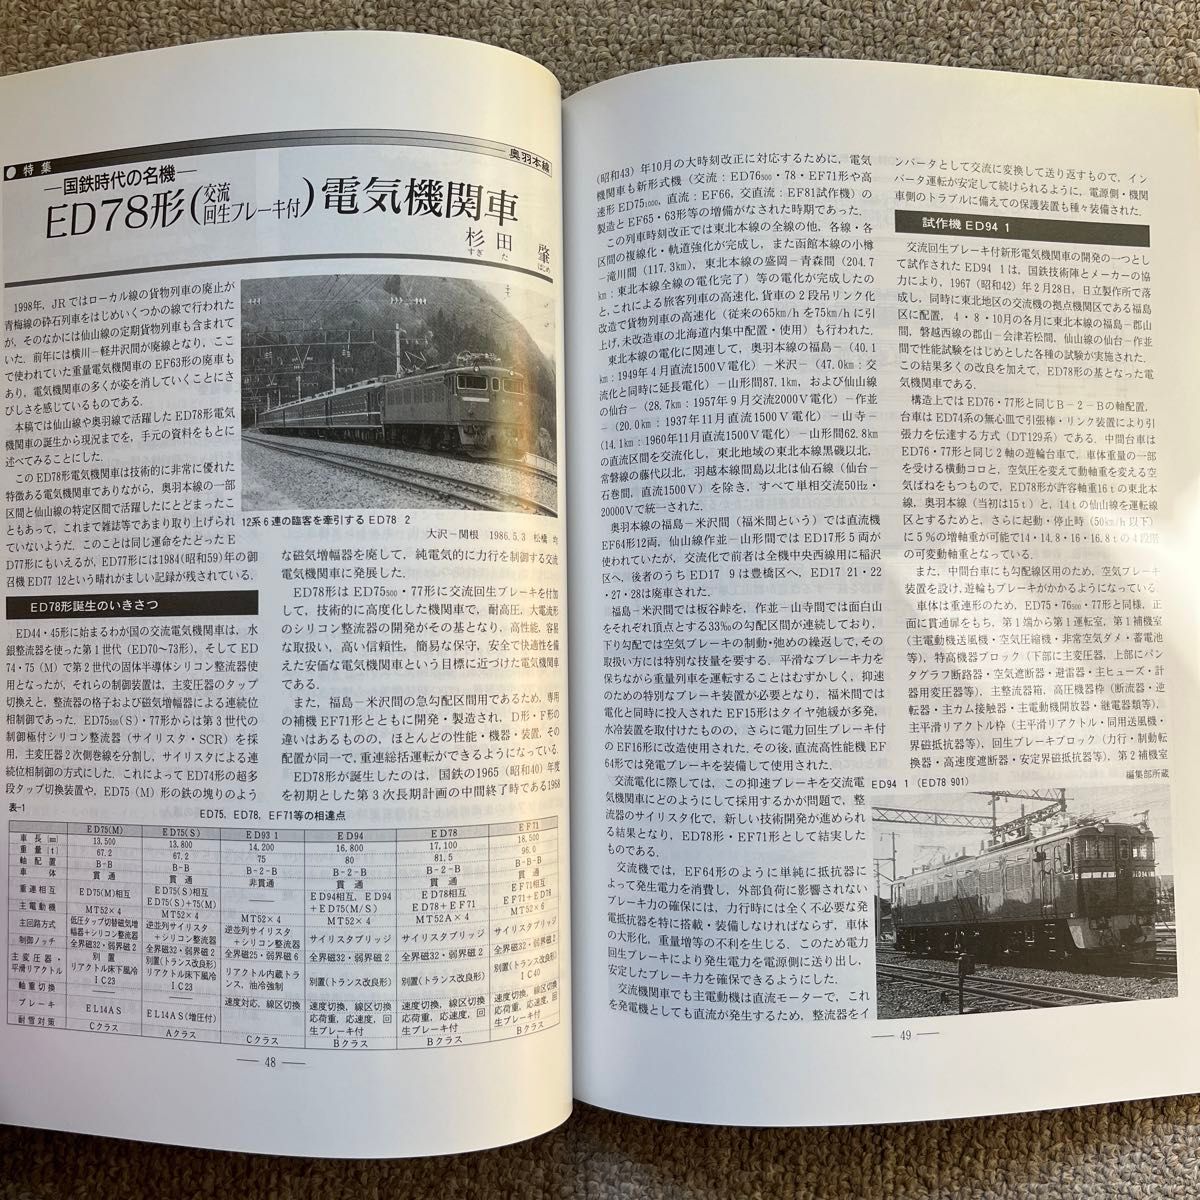 鉄道ピクトリアル　No.665　1999年 2月号　〈特集〉奥羽本線